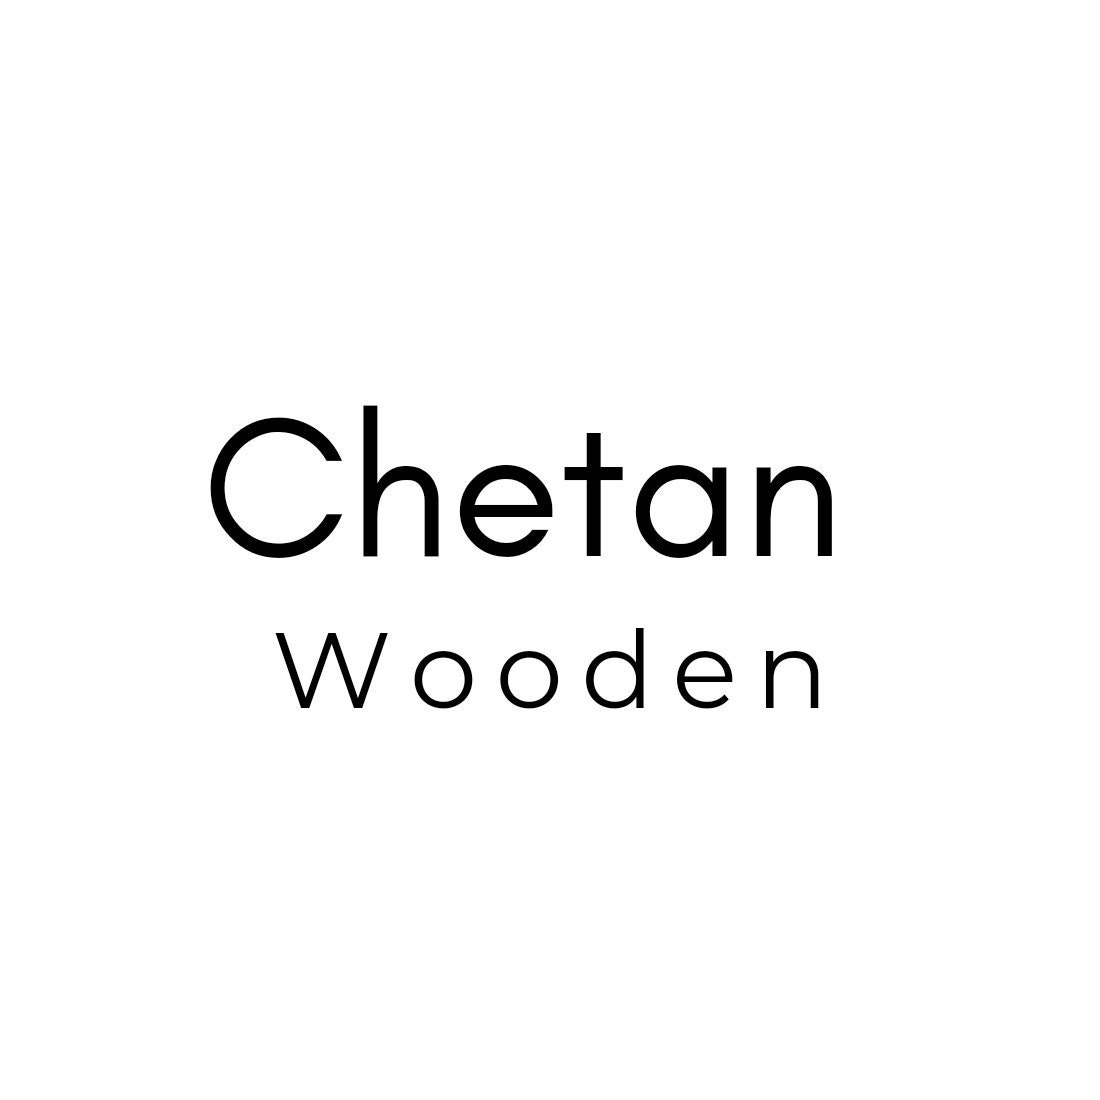 Wooden Handle, ChetanWooden